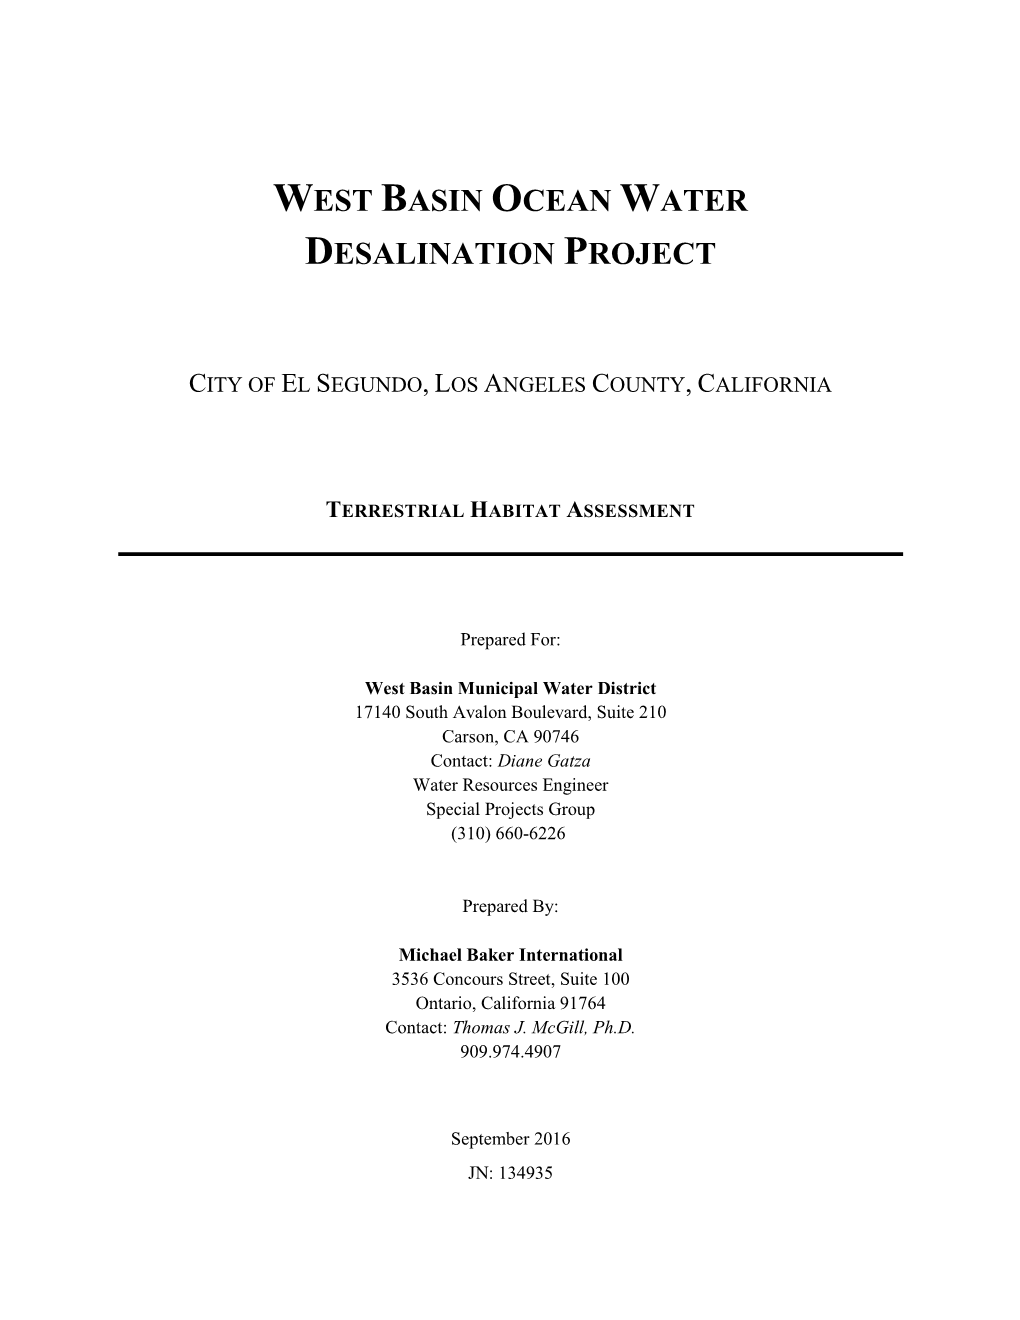 Appendix 6. West Basin Ocean Water Desalination Project Terrestrial